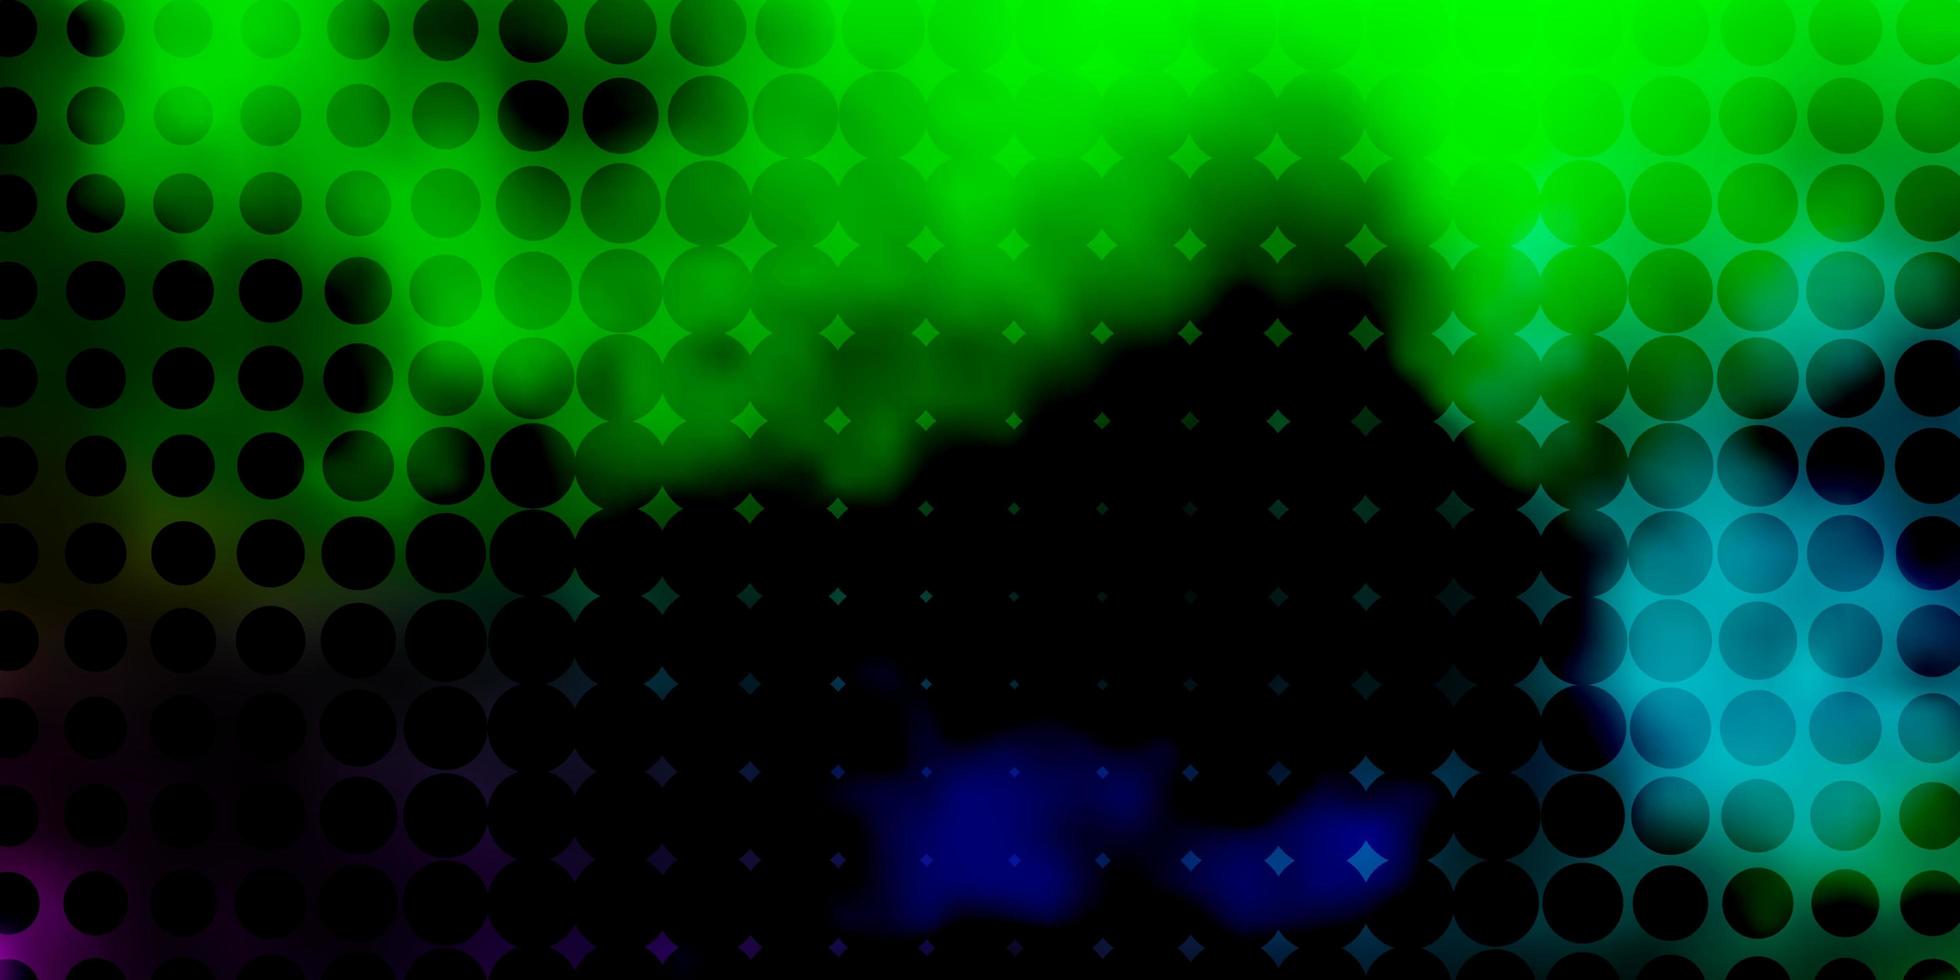 ljusrosa, gröna vektormall med cirklar. vektor